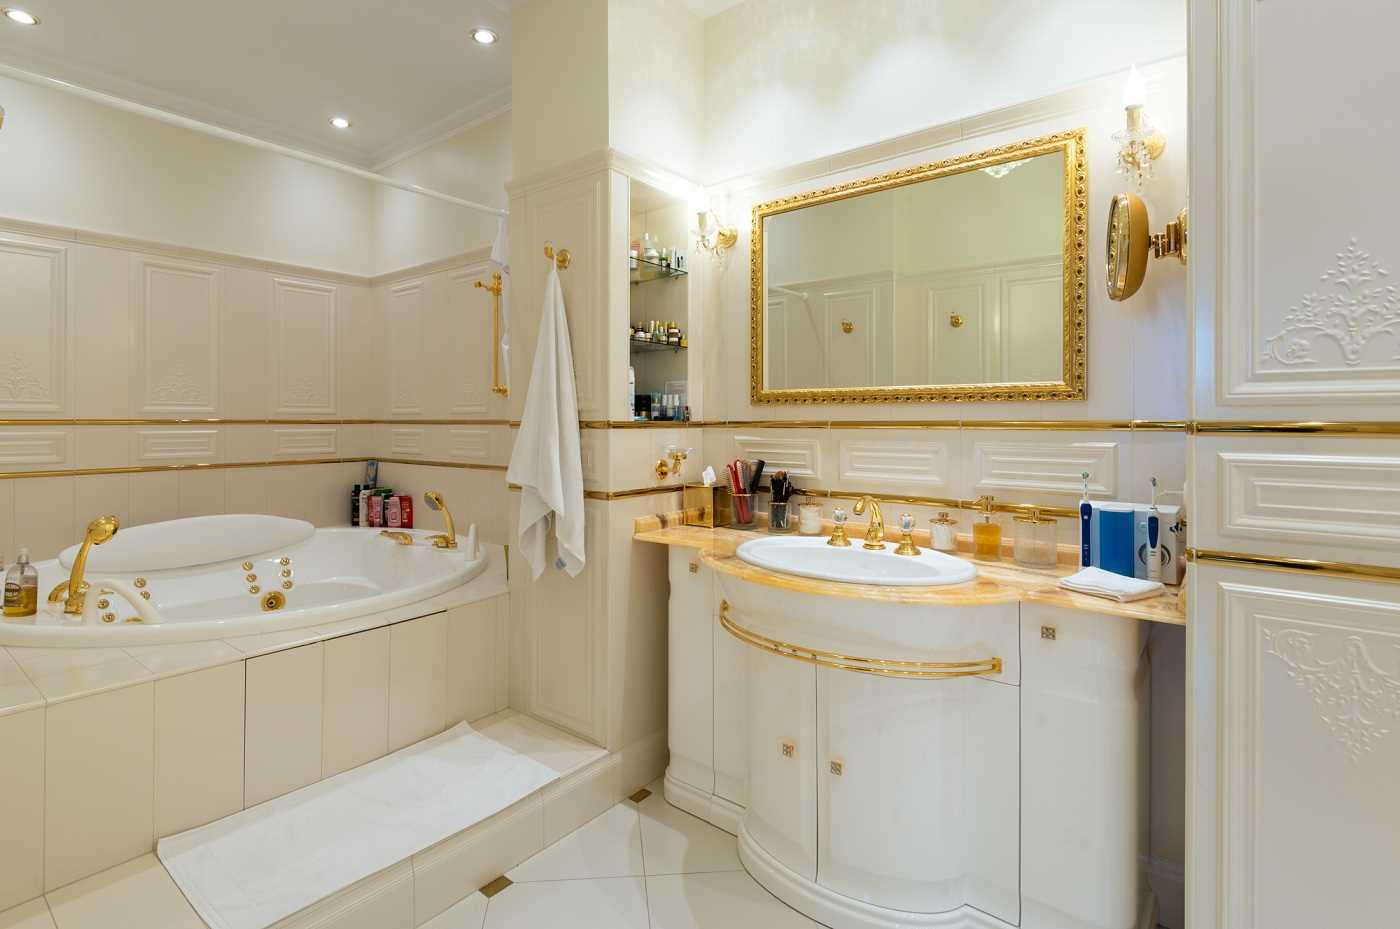 version du design insolite de la salle de bain dans un style classique